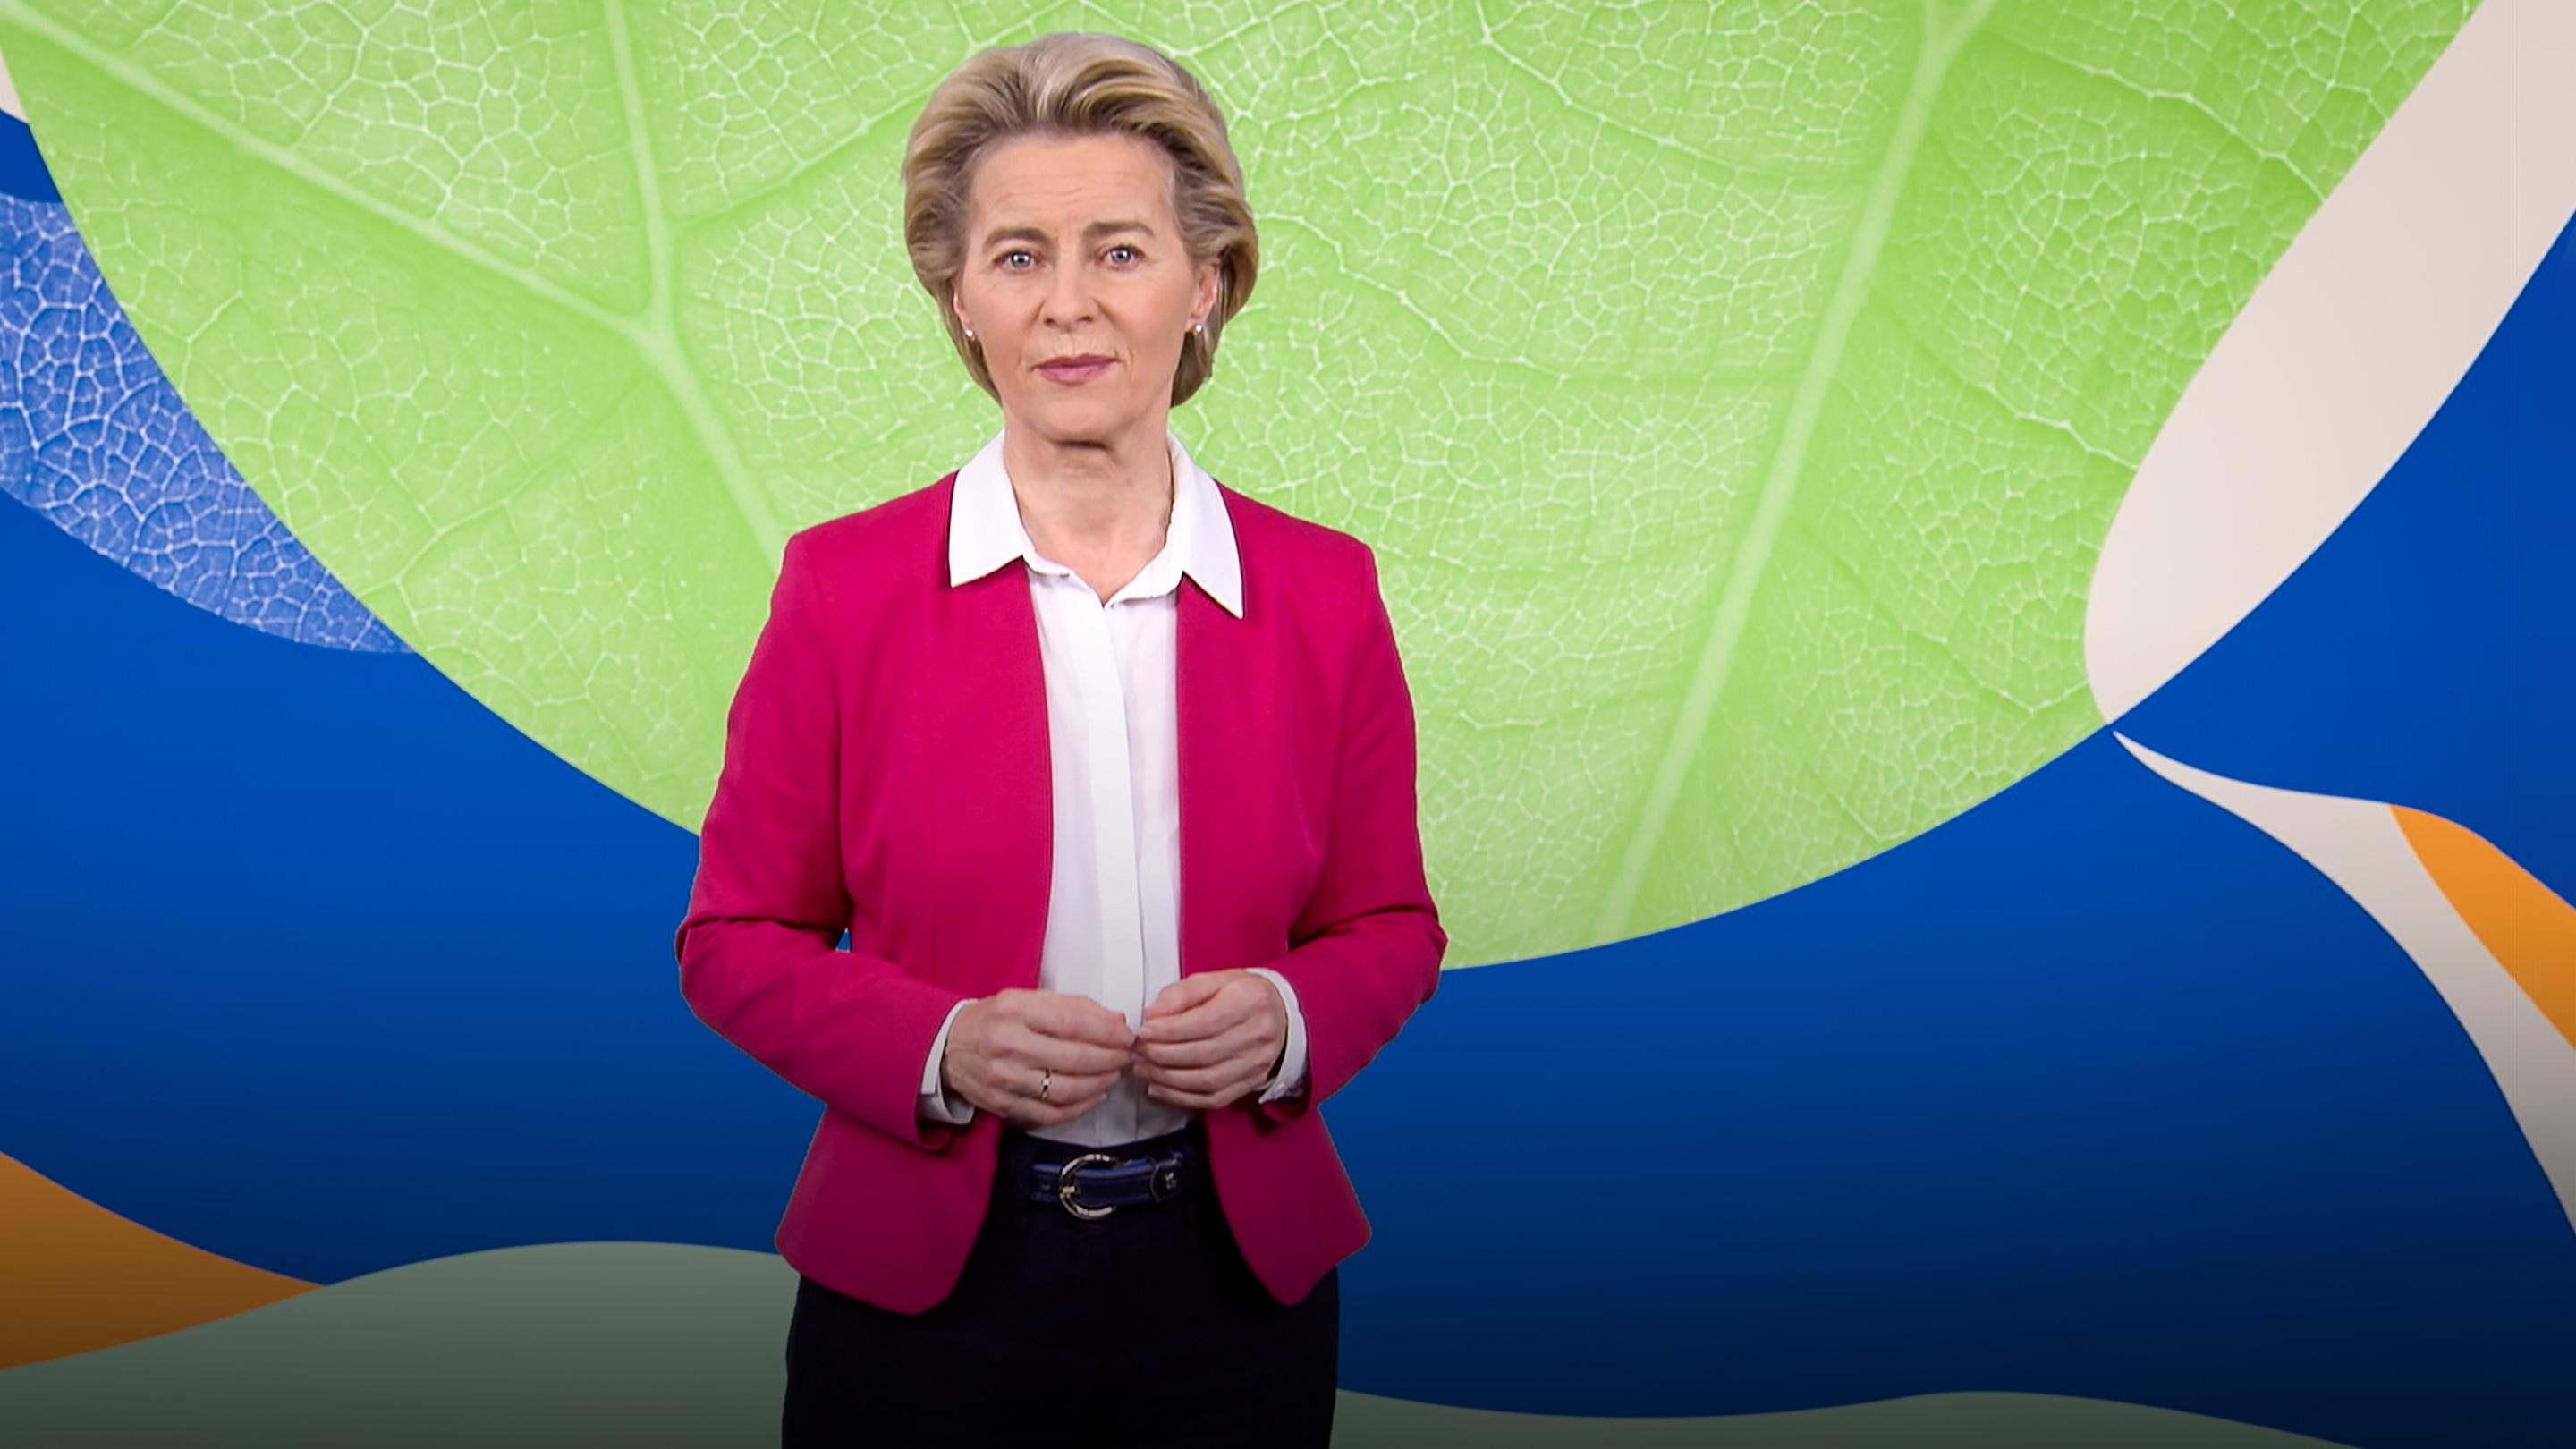 Europe’s plan to become the first carbon-neutral continent | Ursula von der Leyen